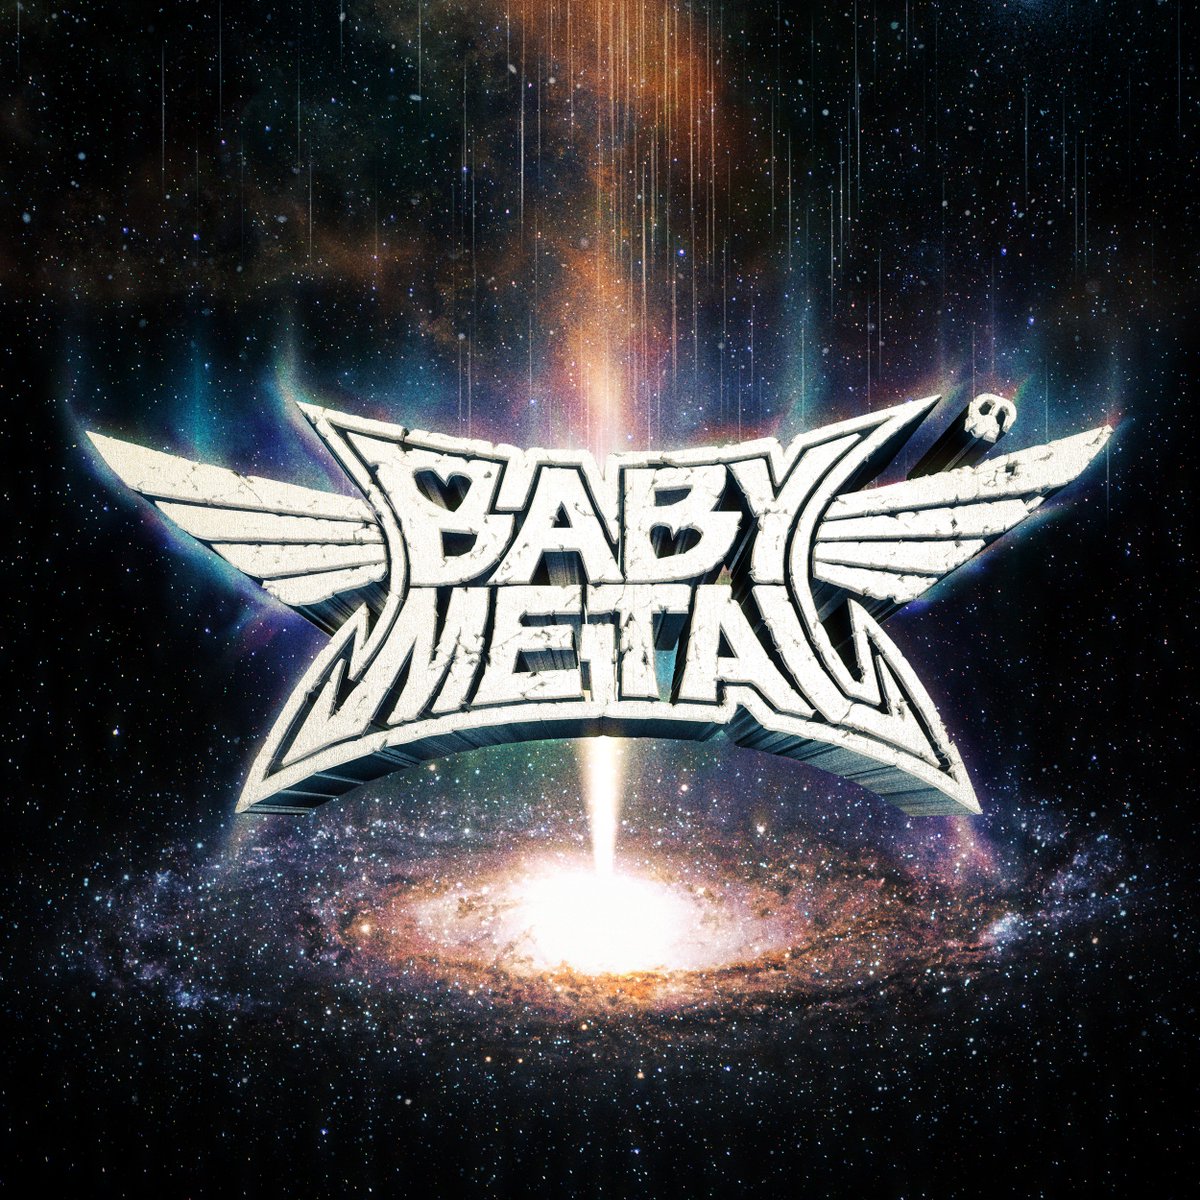 Hasil gambar untuk album metal galaxy